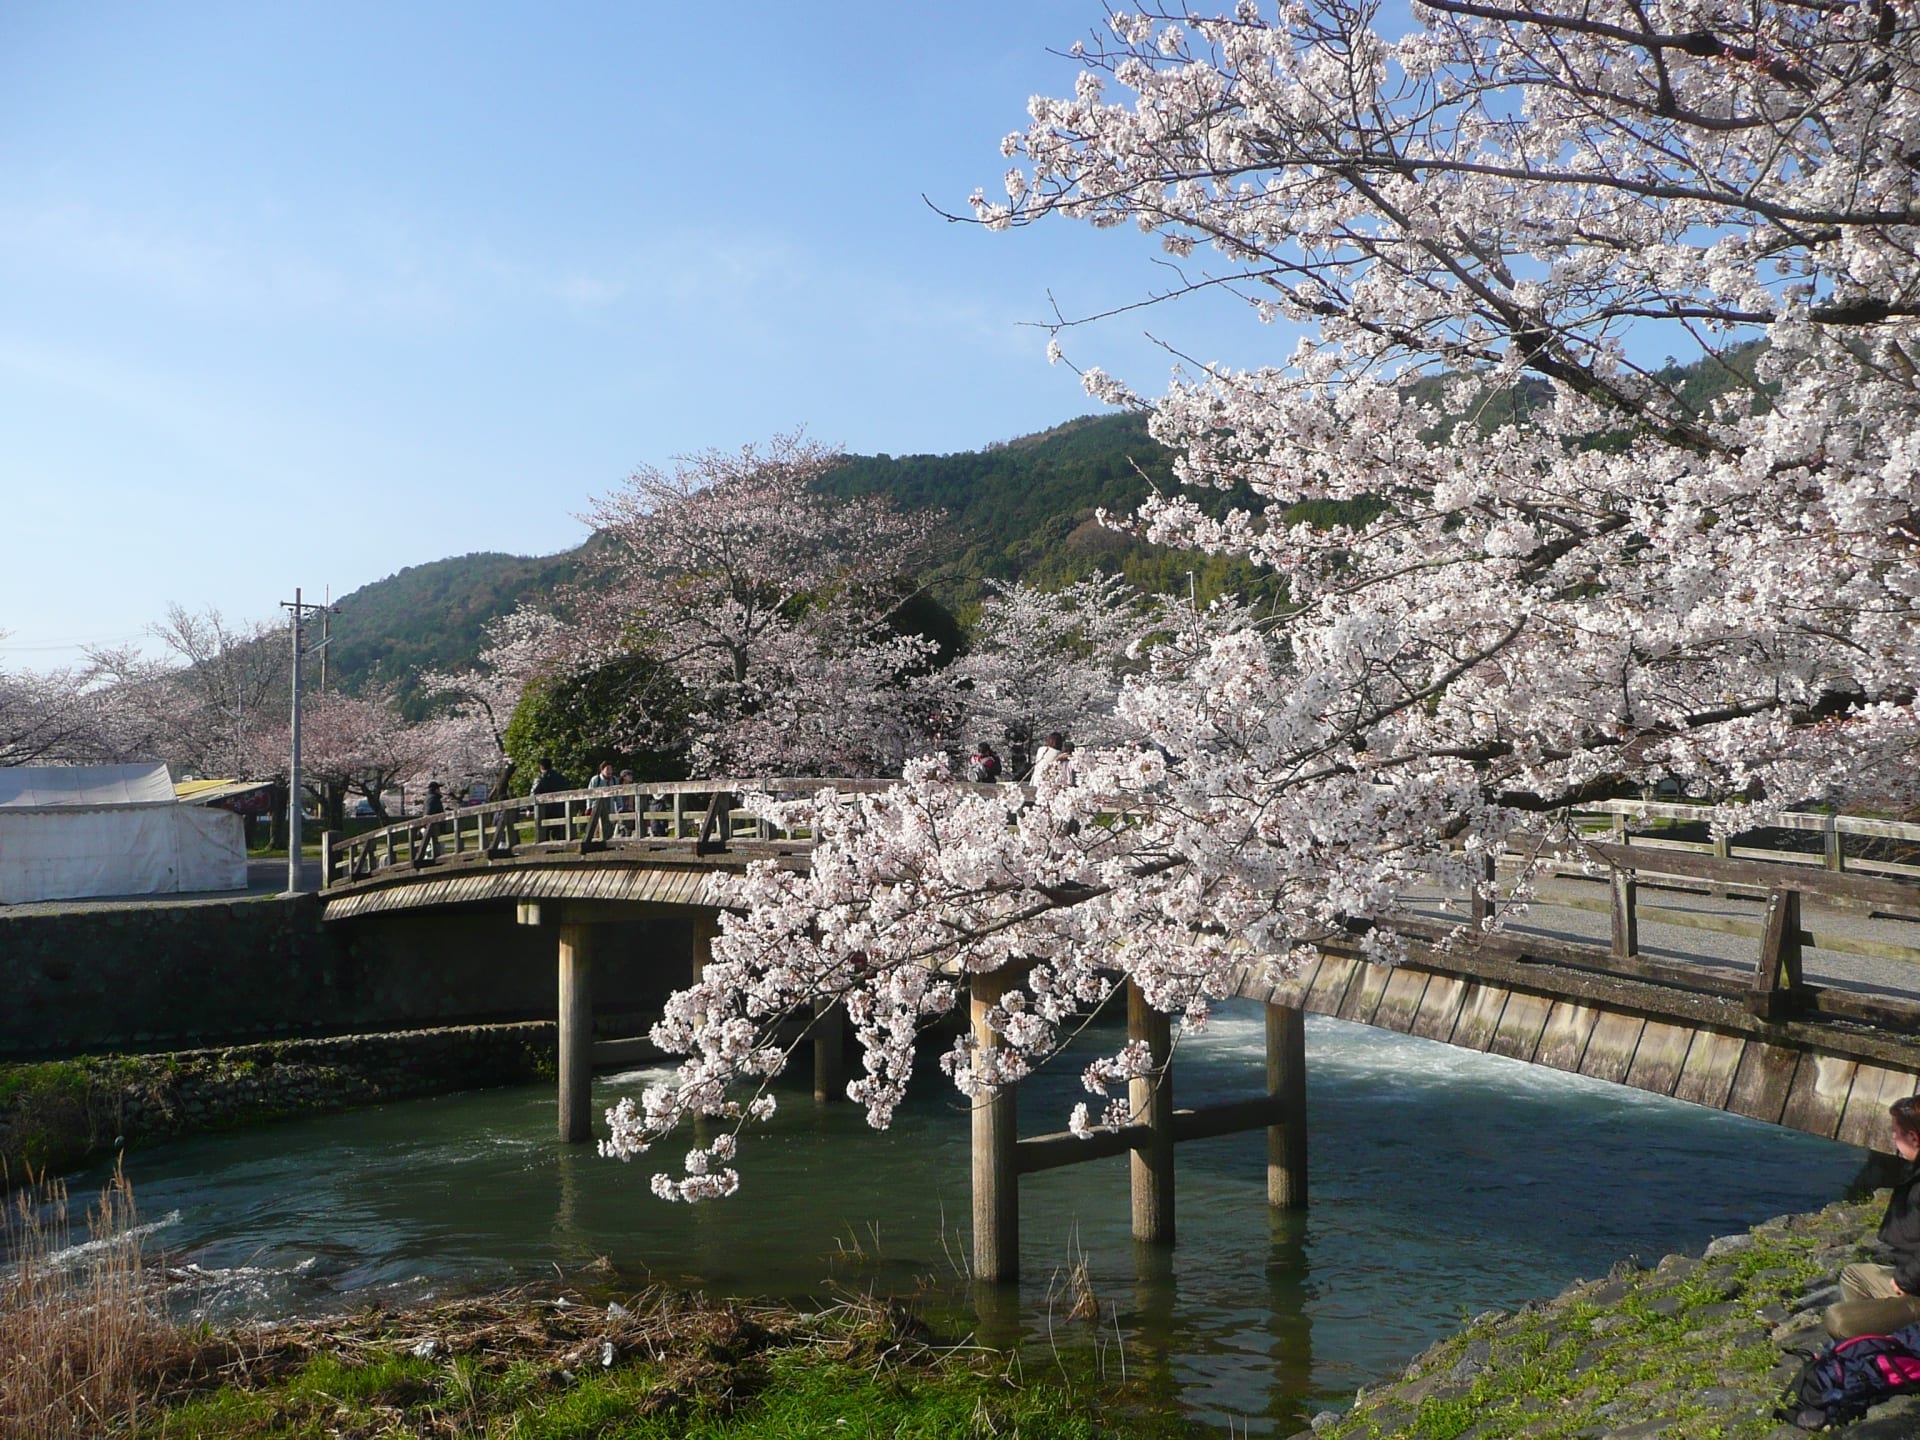 Hoa anh đào nở rộ luôn là cảm hứng vô tận cho người yêu thích văn hóa Nhật Bản. Sắc hồng tươi sáng, tinh khiết khi vừa mới nảy nở hoa, và phủ kín những ngả đường trên khắp đất nước Nhật Bản. Hãy cùng thưởng thức hình ảnh đẹp và cảm nhận sự tươi mới của hoa anh đào nở rộ.